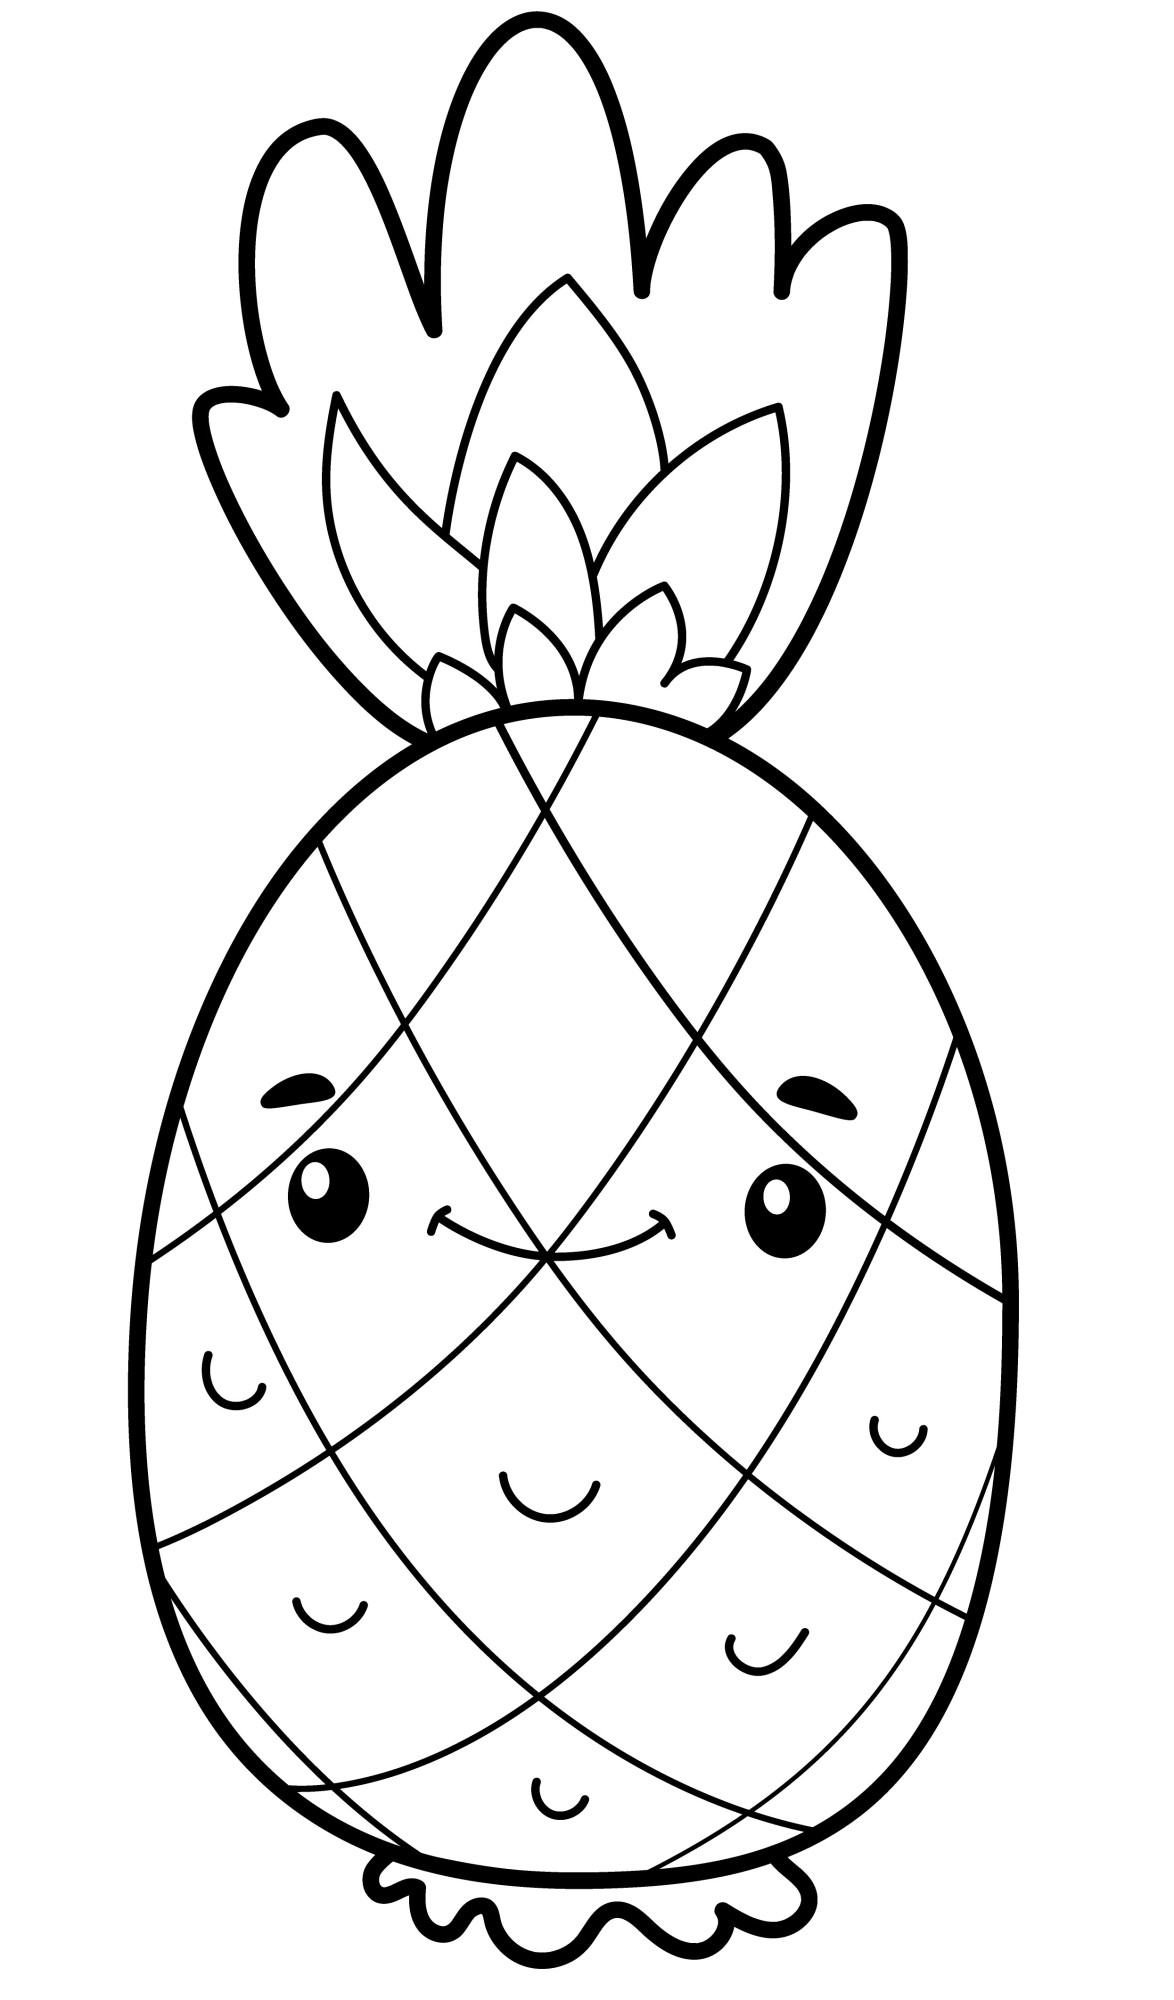 Раскраска для детей: экзотический ананас с лицом улыбается